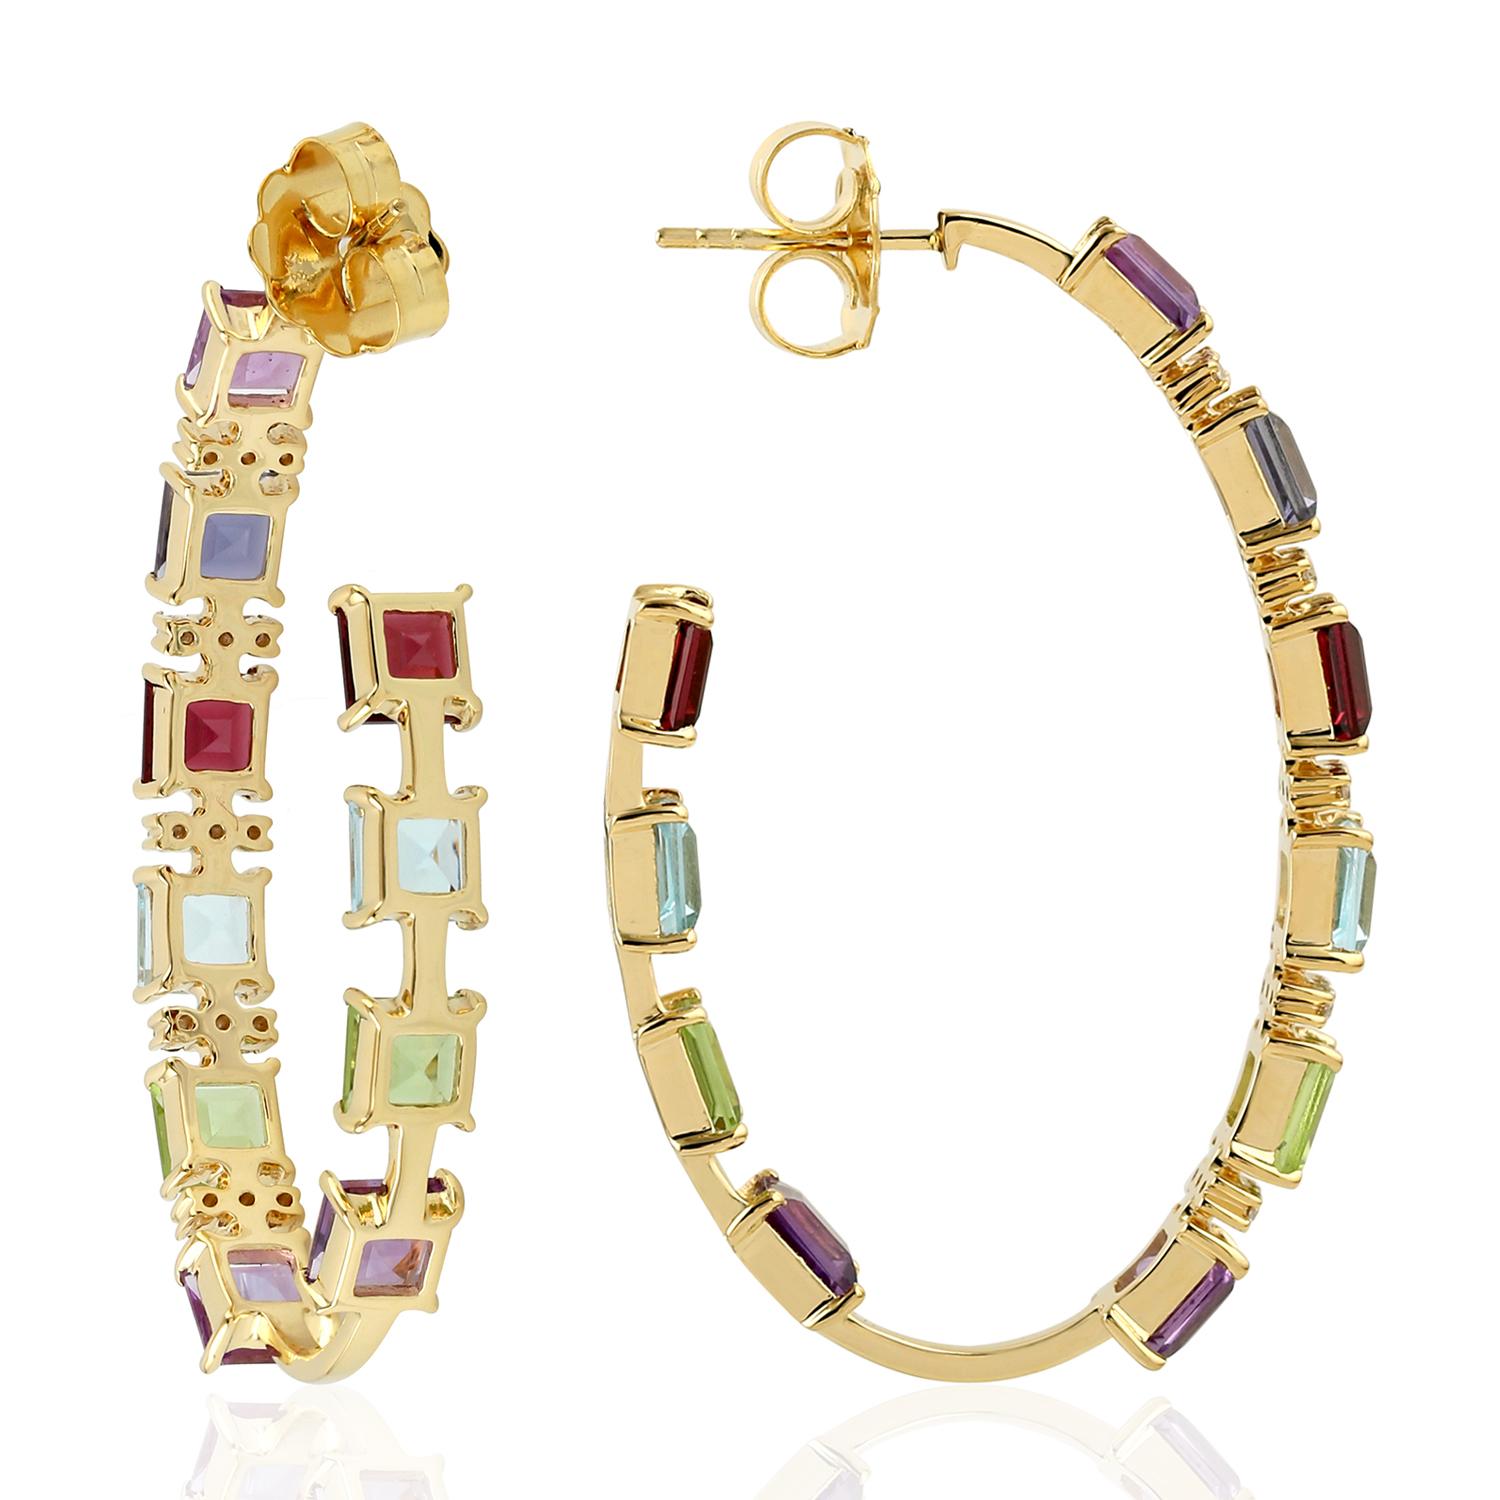 Diese handgefertigten Ohrringe aus 18-karätigem Gold sind mit mehreren Edelsteinen und 0,41 Karat funkelnden Diamanten besetzt.

FOLGEN  MEGHNA JEWELS Storefront, um die neueste Kollektion und exklusive Stücke zu sehen.  Meghna Jewels ist stolz